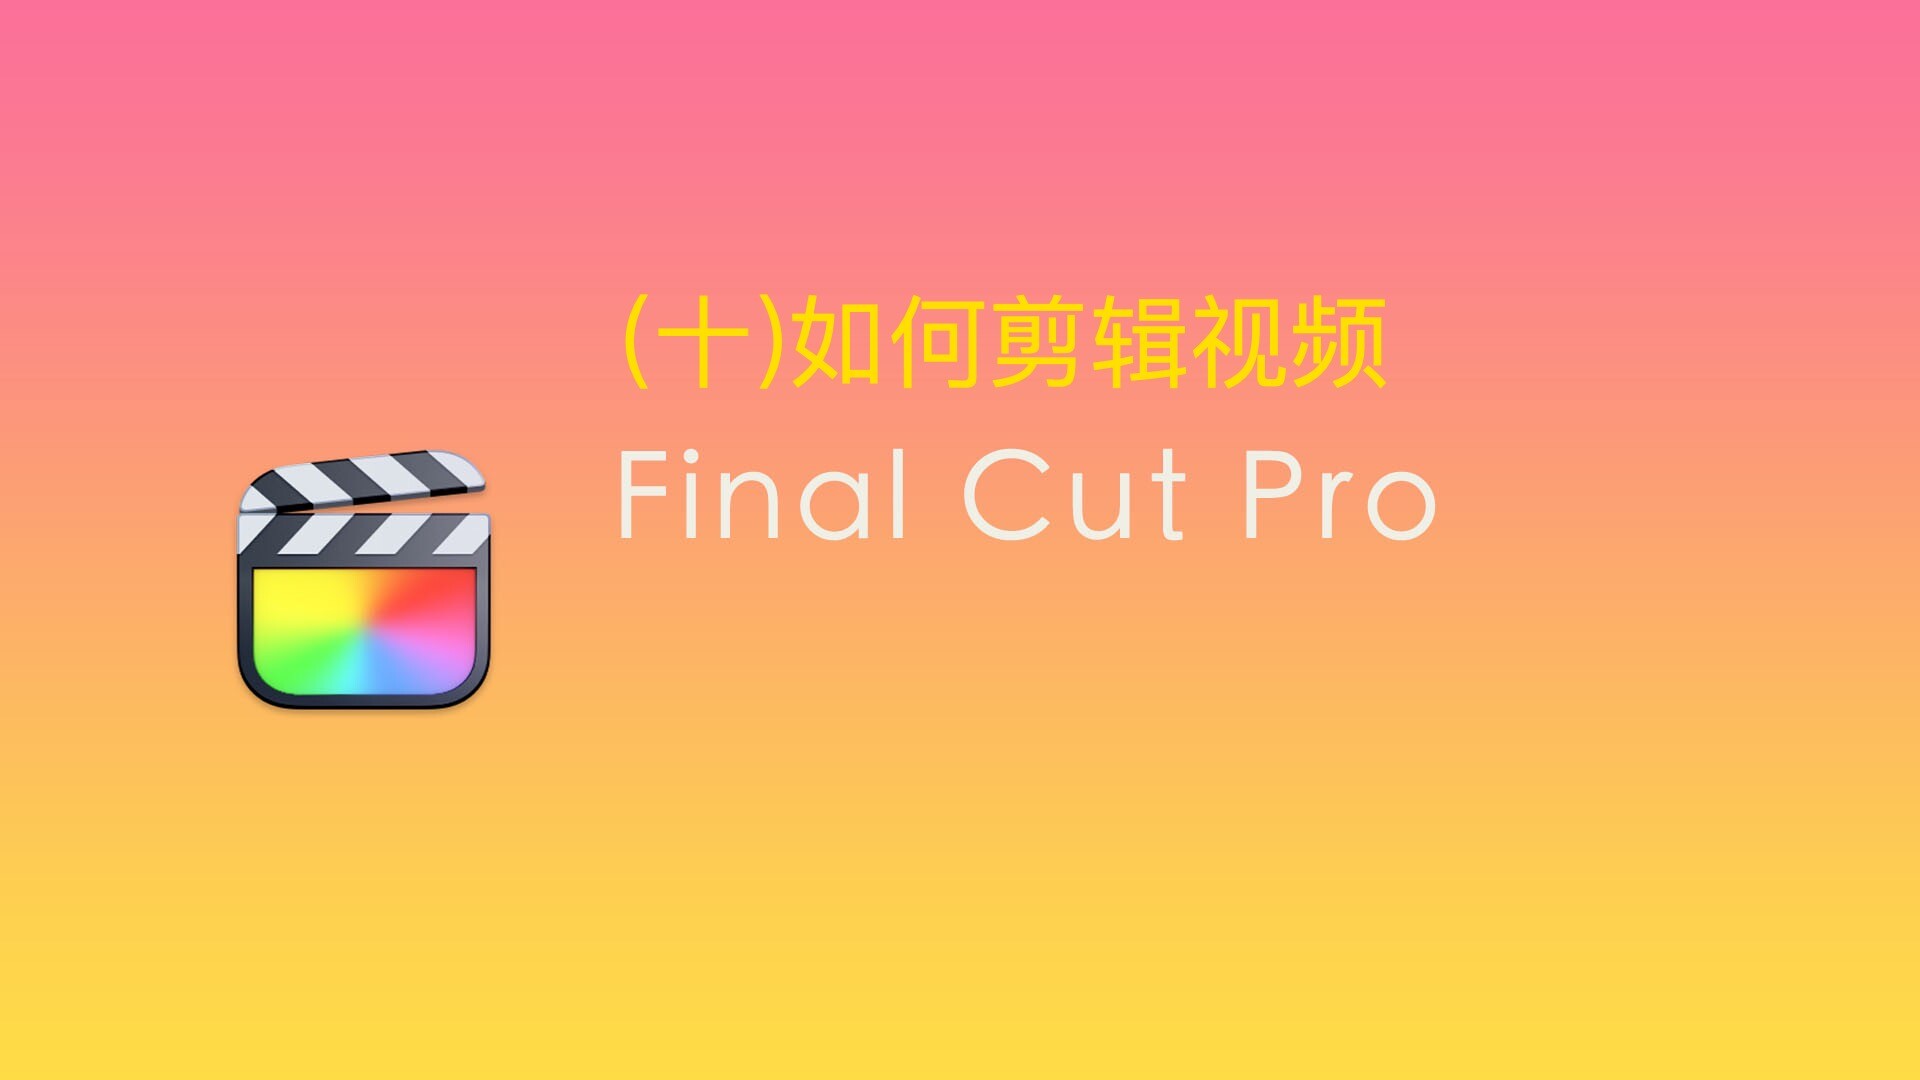 Final Cut Pro中文新手教程 (10)如何剪辑视频